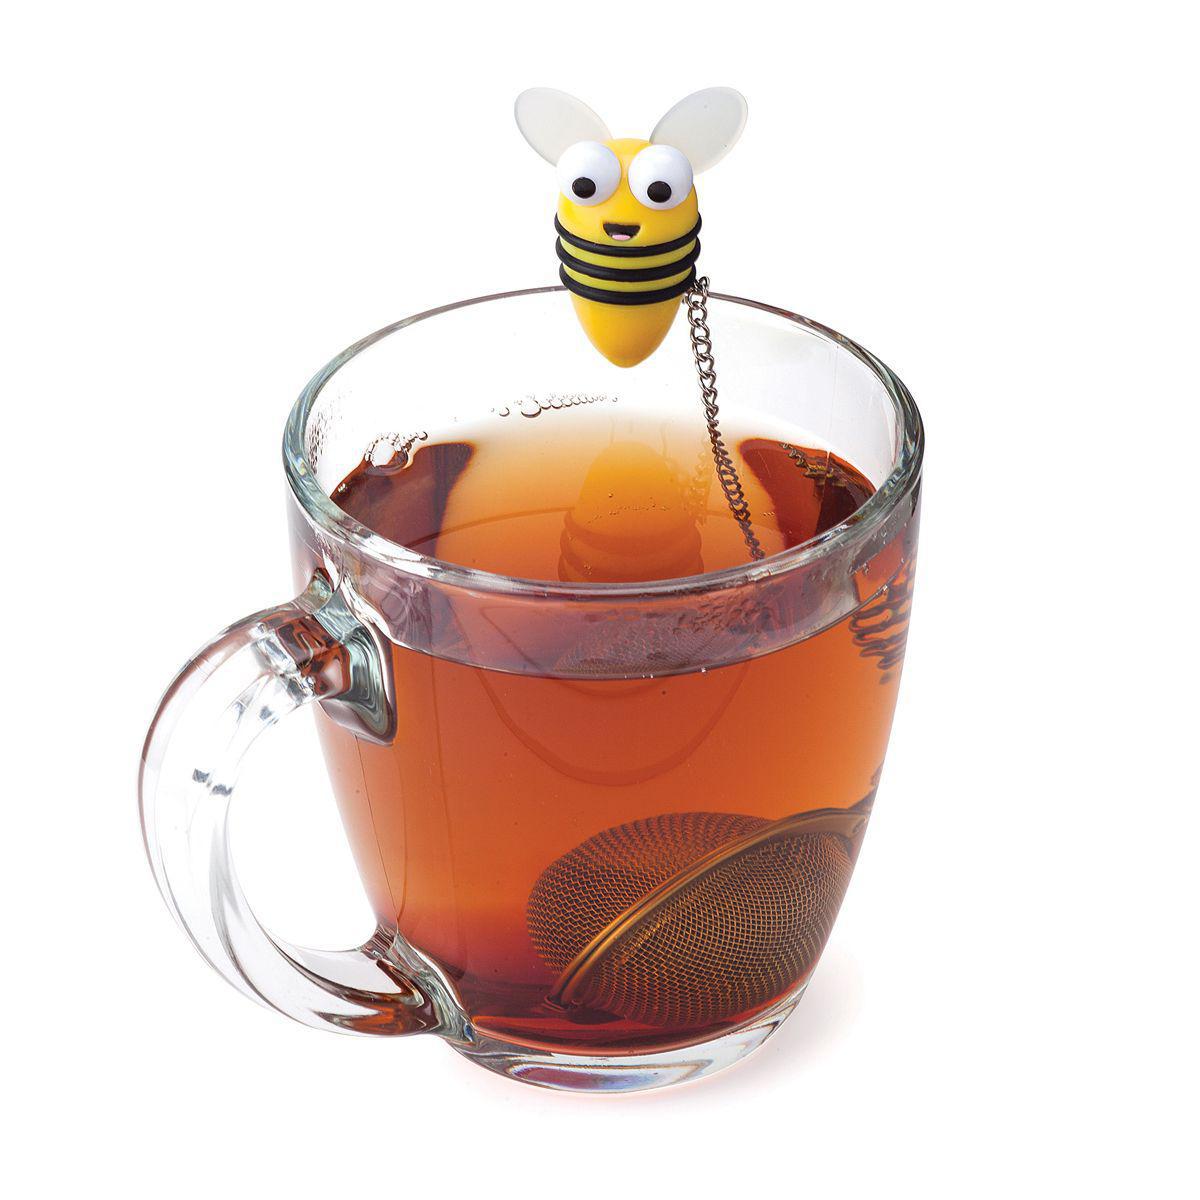 Joie Bee Tea Infuser